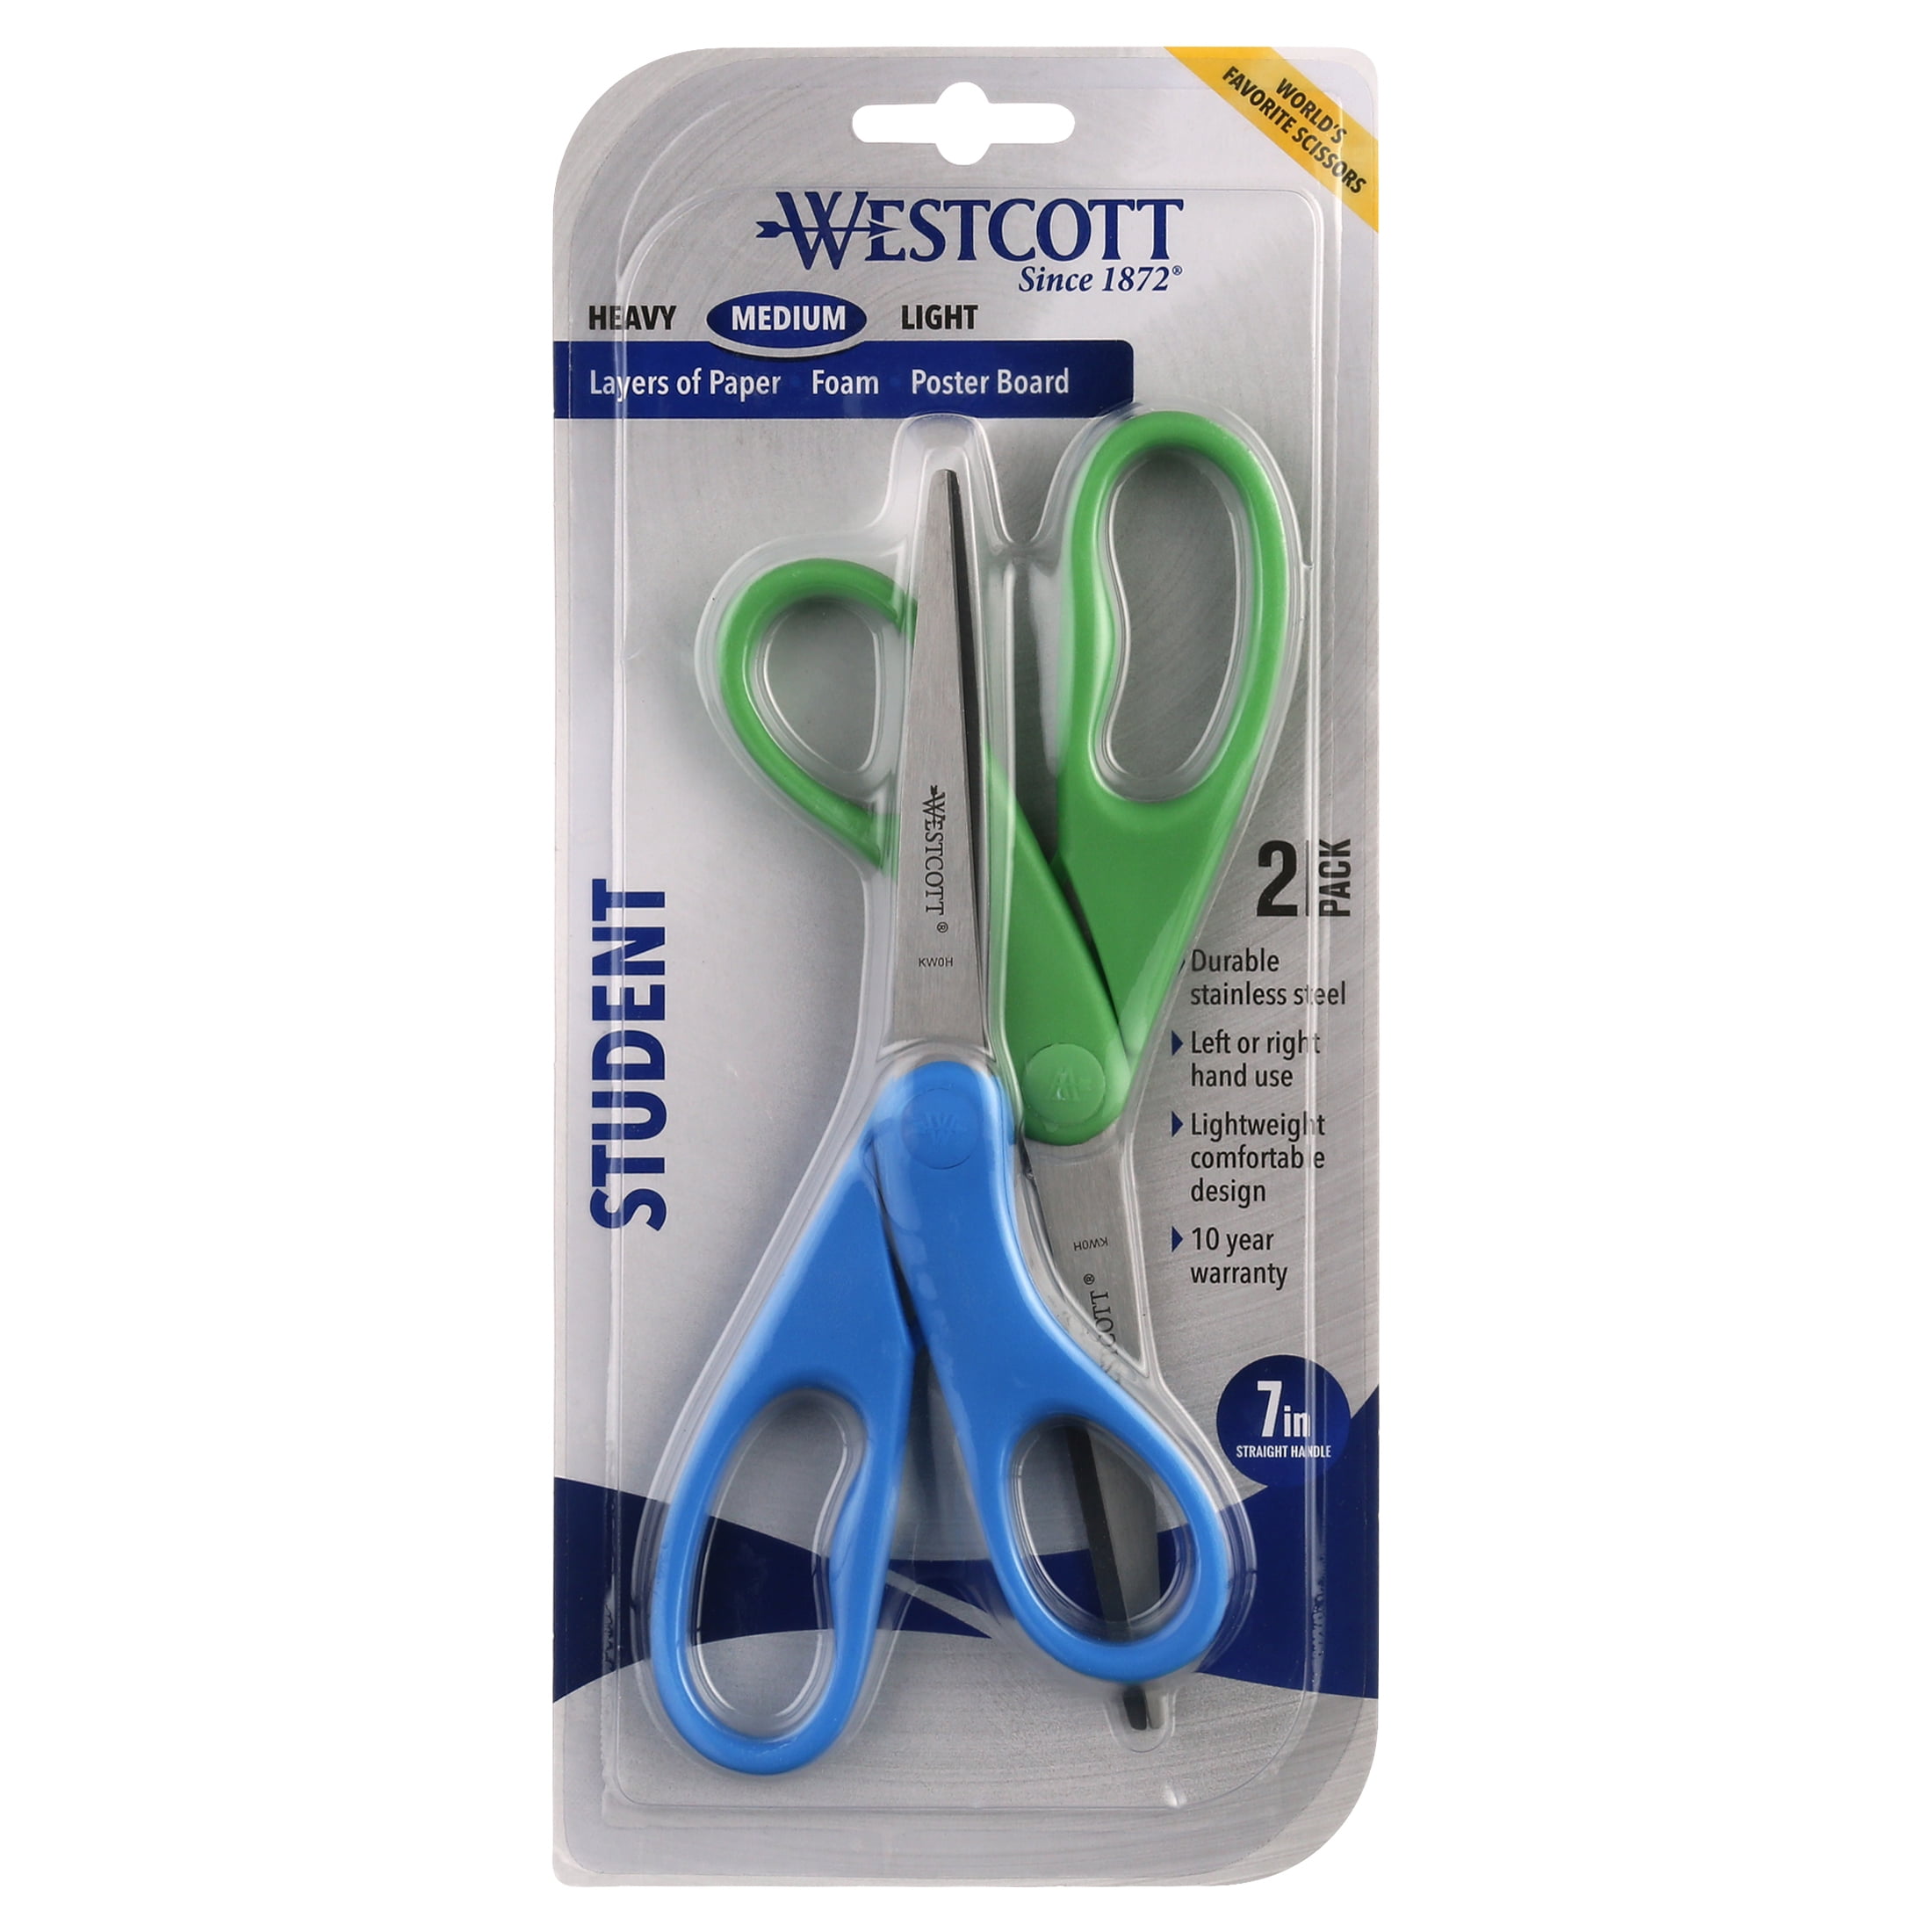 Westcott Scissors, Teachers Bulk Pack Display, Kids 13130 13140